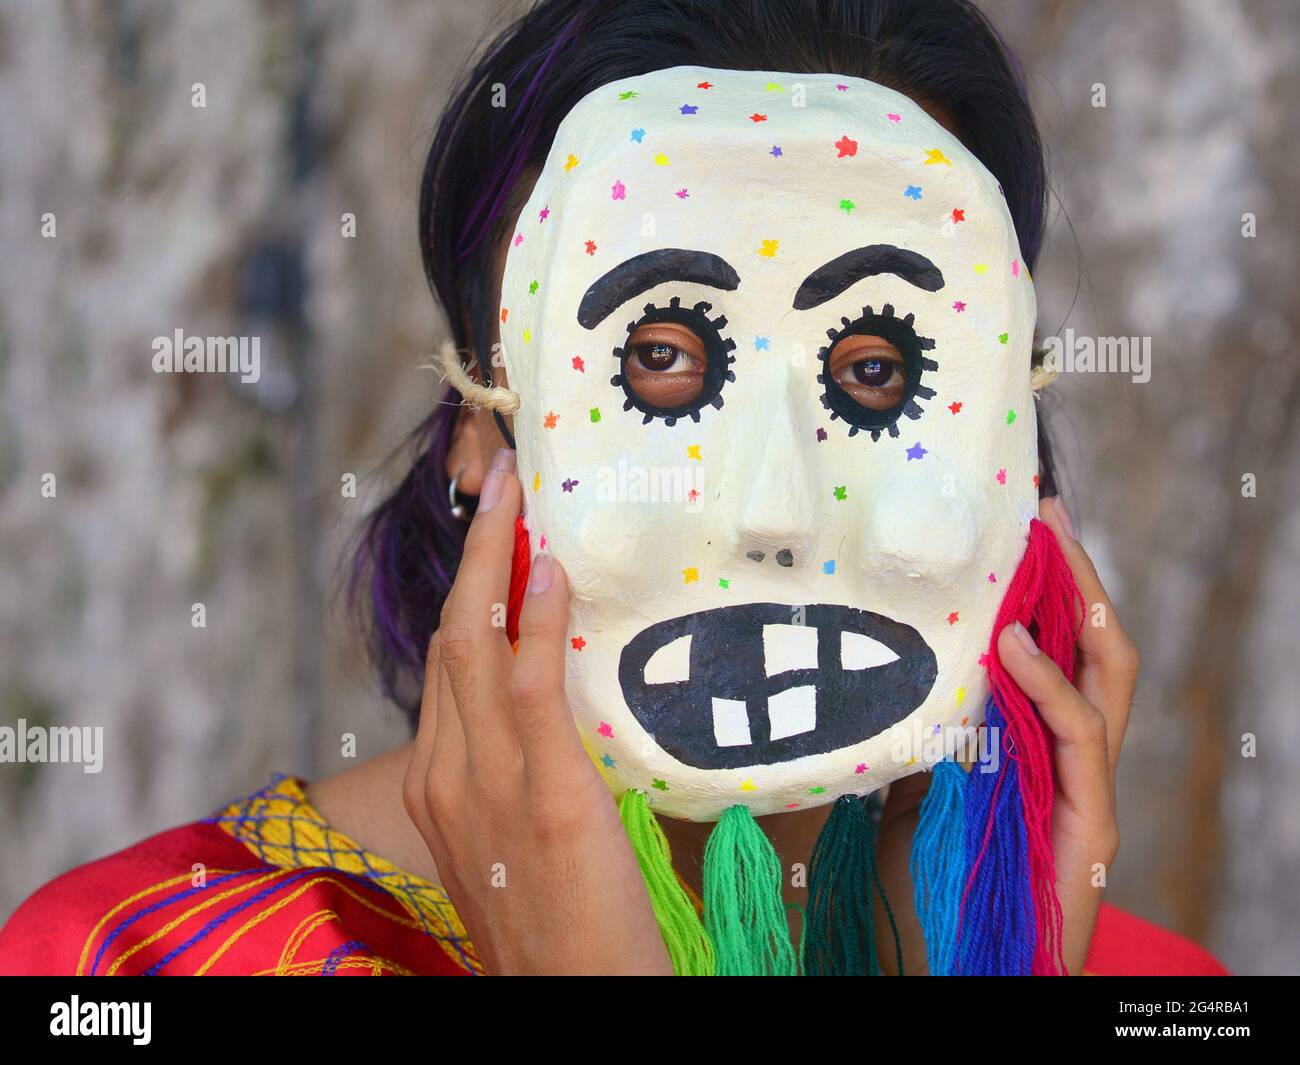 Giovane artista messicano (maschera maker, maschera pittore) mostra una delle sue tradizionali maschere folcloriche culturali e lo indossa su una maschera chirurgica nera. Foto Stock